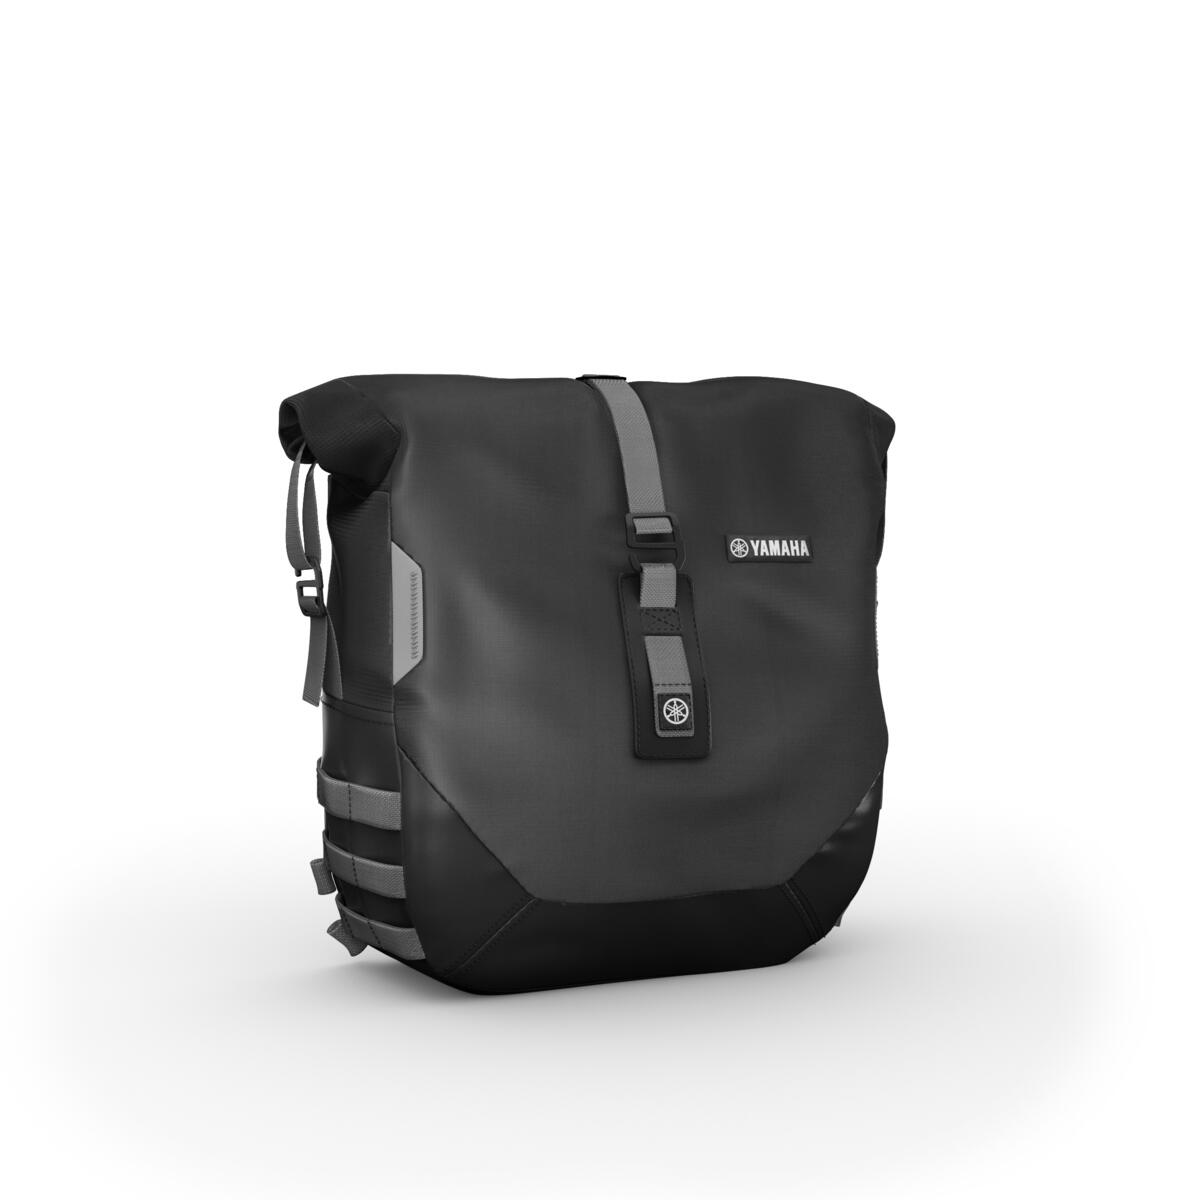 Förvandla din XSR900 till en perfekt roadster för långa resor med Weekend-paketet. Med två mjuka väskor på 13,5 liter vardera, max 5 kilo per väska,  kan du packa dina väskor och ge dig ut på en extra lång körning.
 Väskorna är enkla att montera och har vattentäta foder som ger bagaget skydd från ogynnsamma väderförhållanden. Paketet levereras med en USB-laddare för att ladda GPS eller telefonen under resan.
